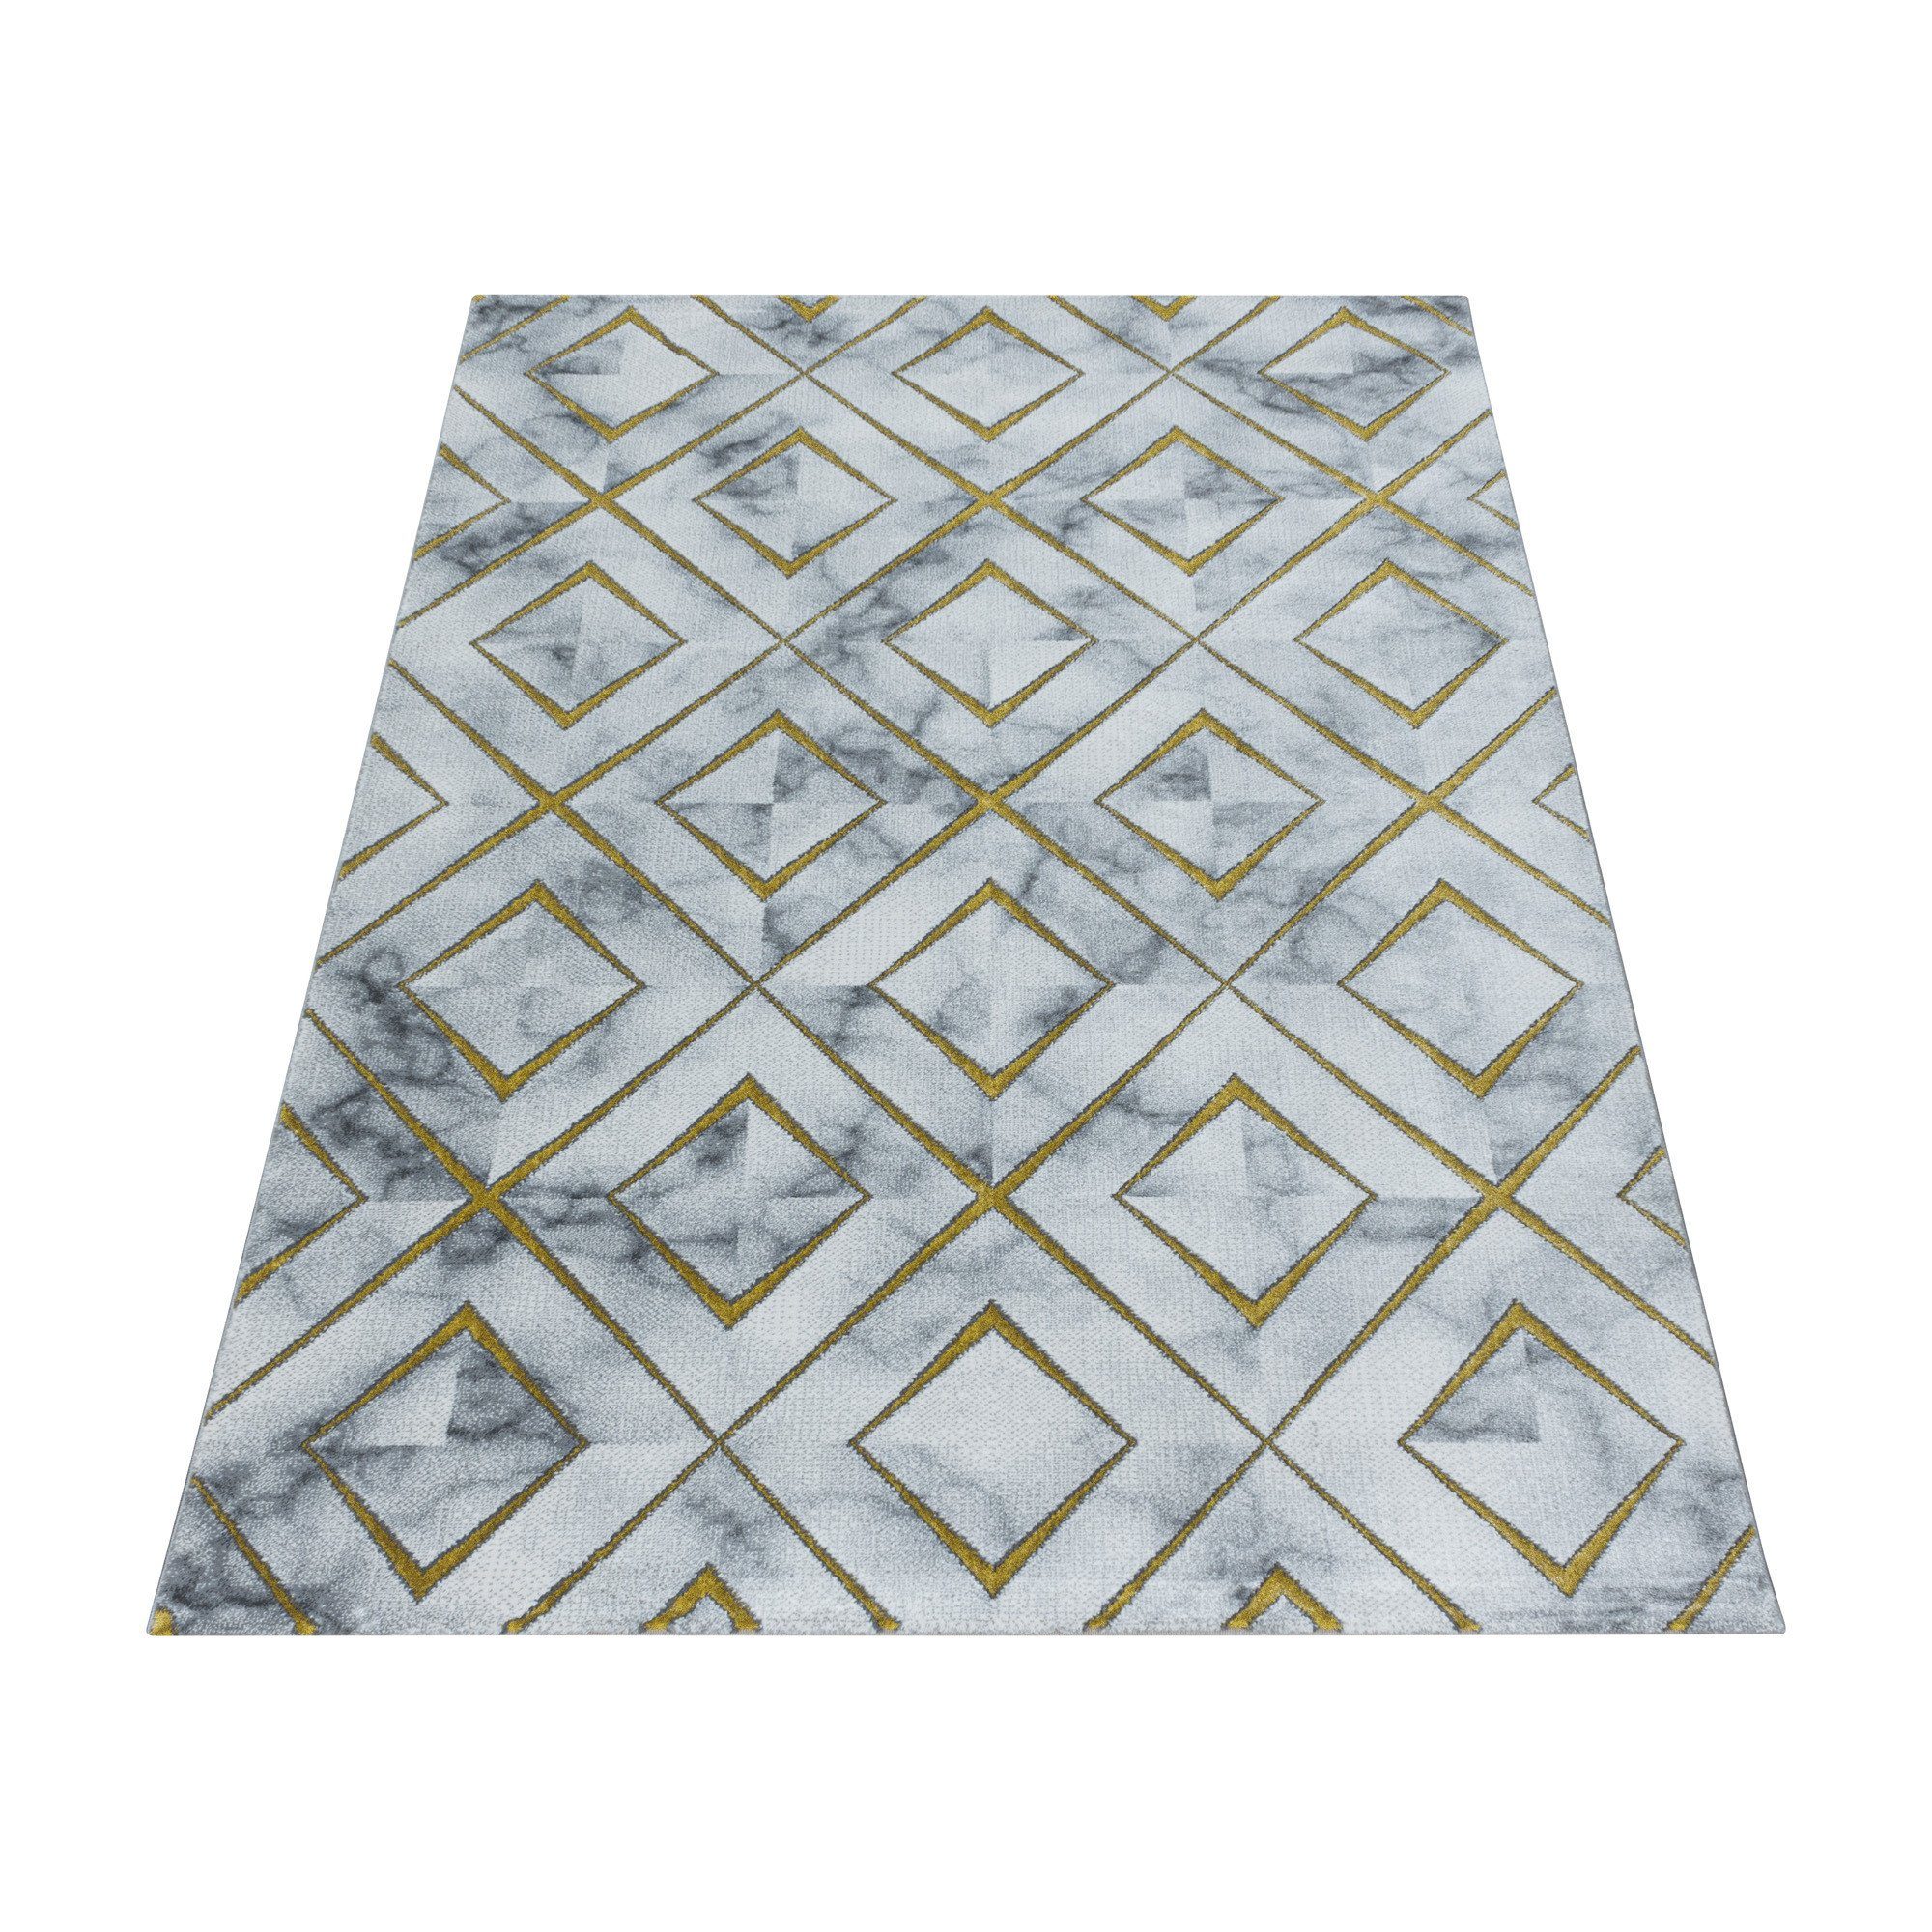 Designteppich Marmoroptik Flachflorteppich Kurzflorteppich Wohnzimmer Muster, Giancasa Gold